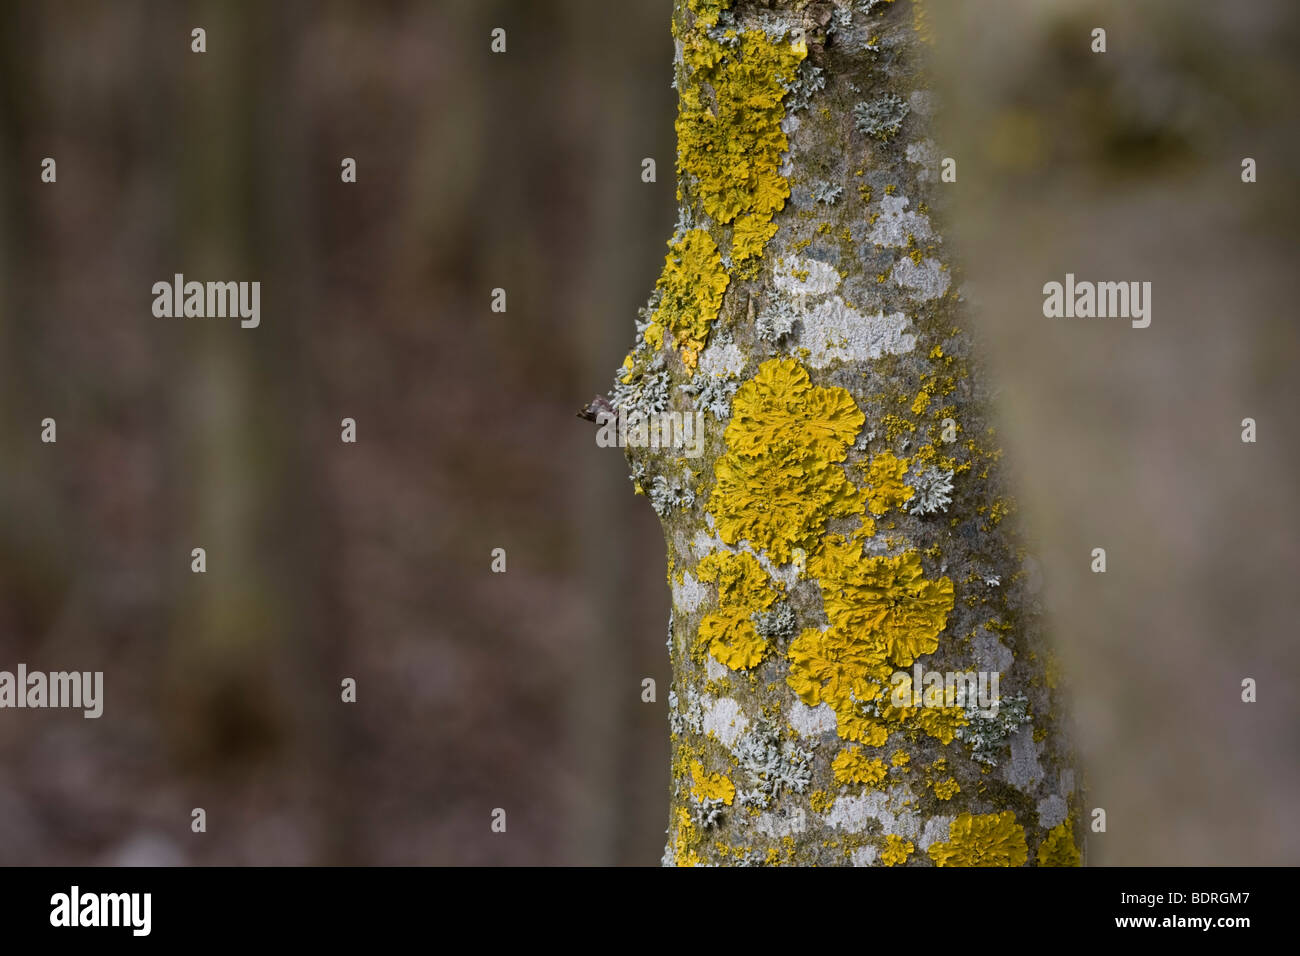 Dettaglio eines Baumstammes mit Flechten im hintergrund weiter Staemme, licheni, tree-trunk Foto Stock